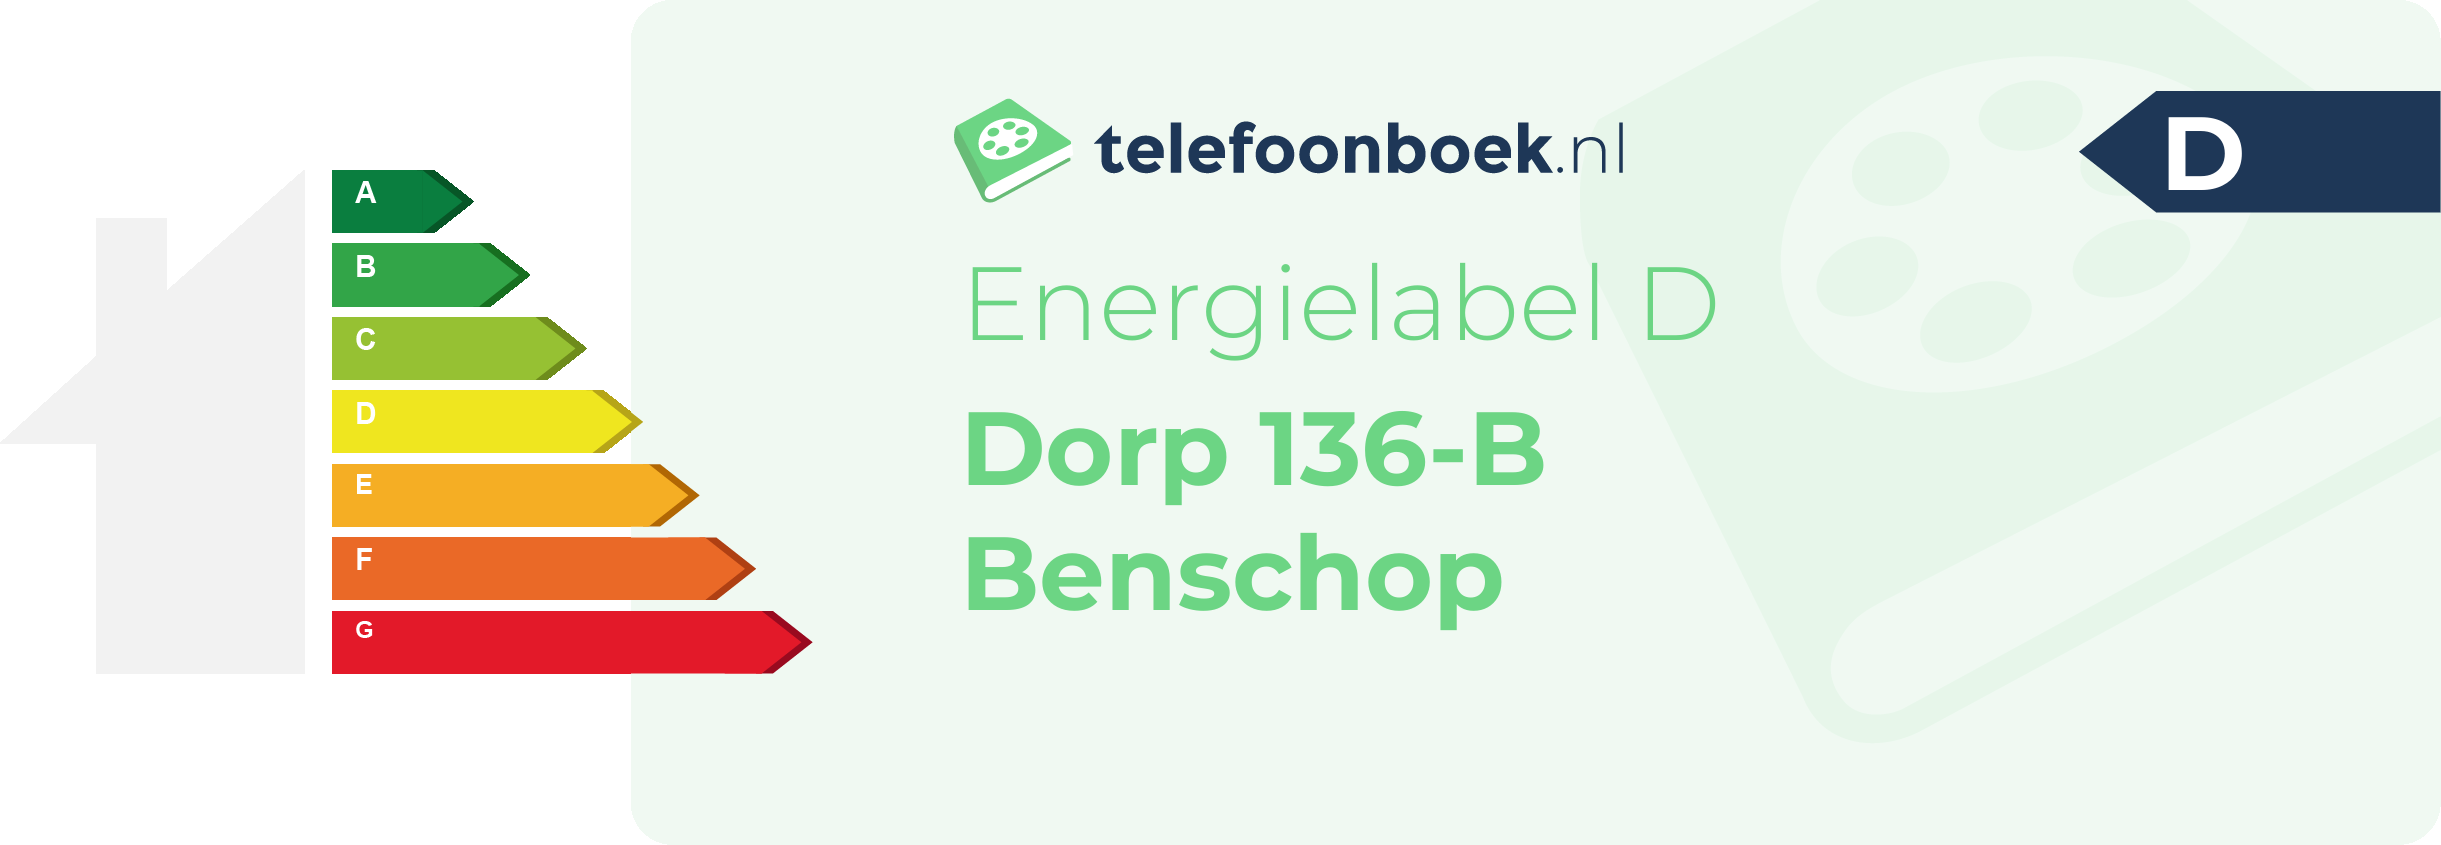 Energielabel Dorp 136-B Benschop